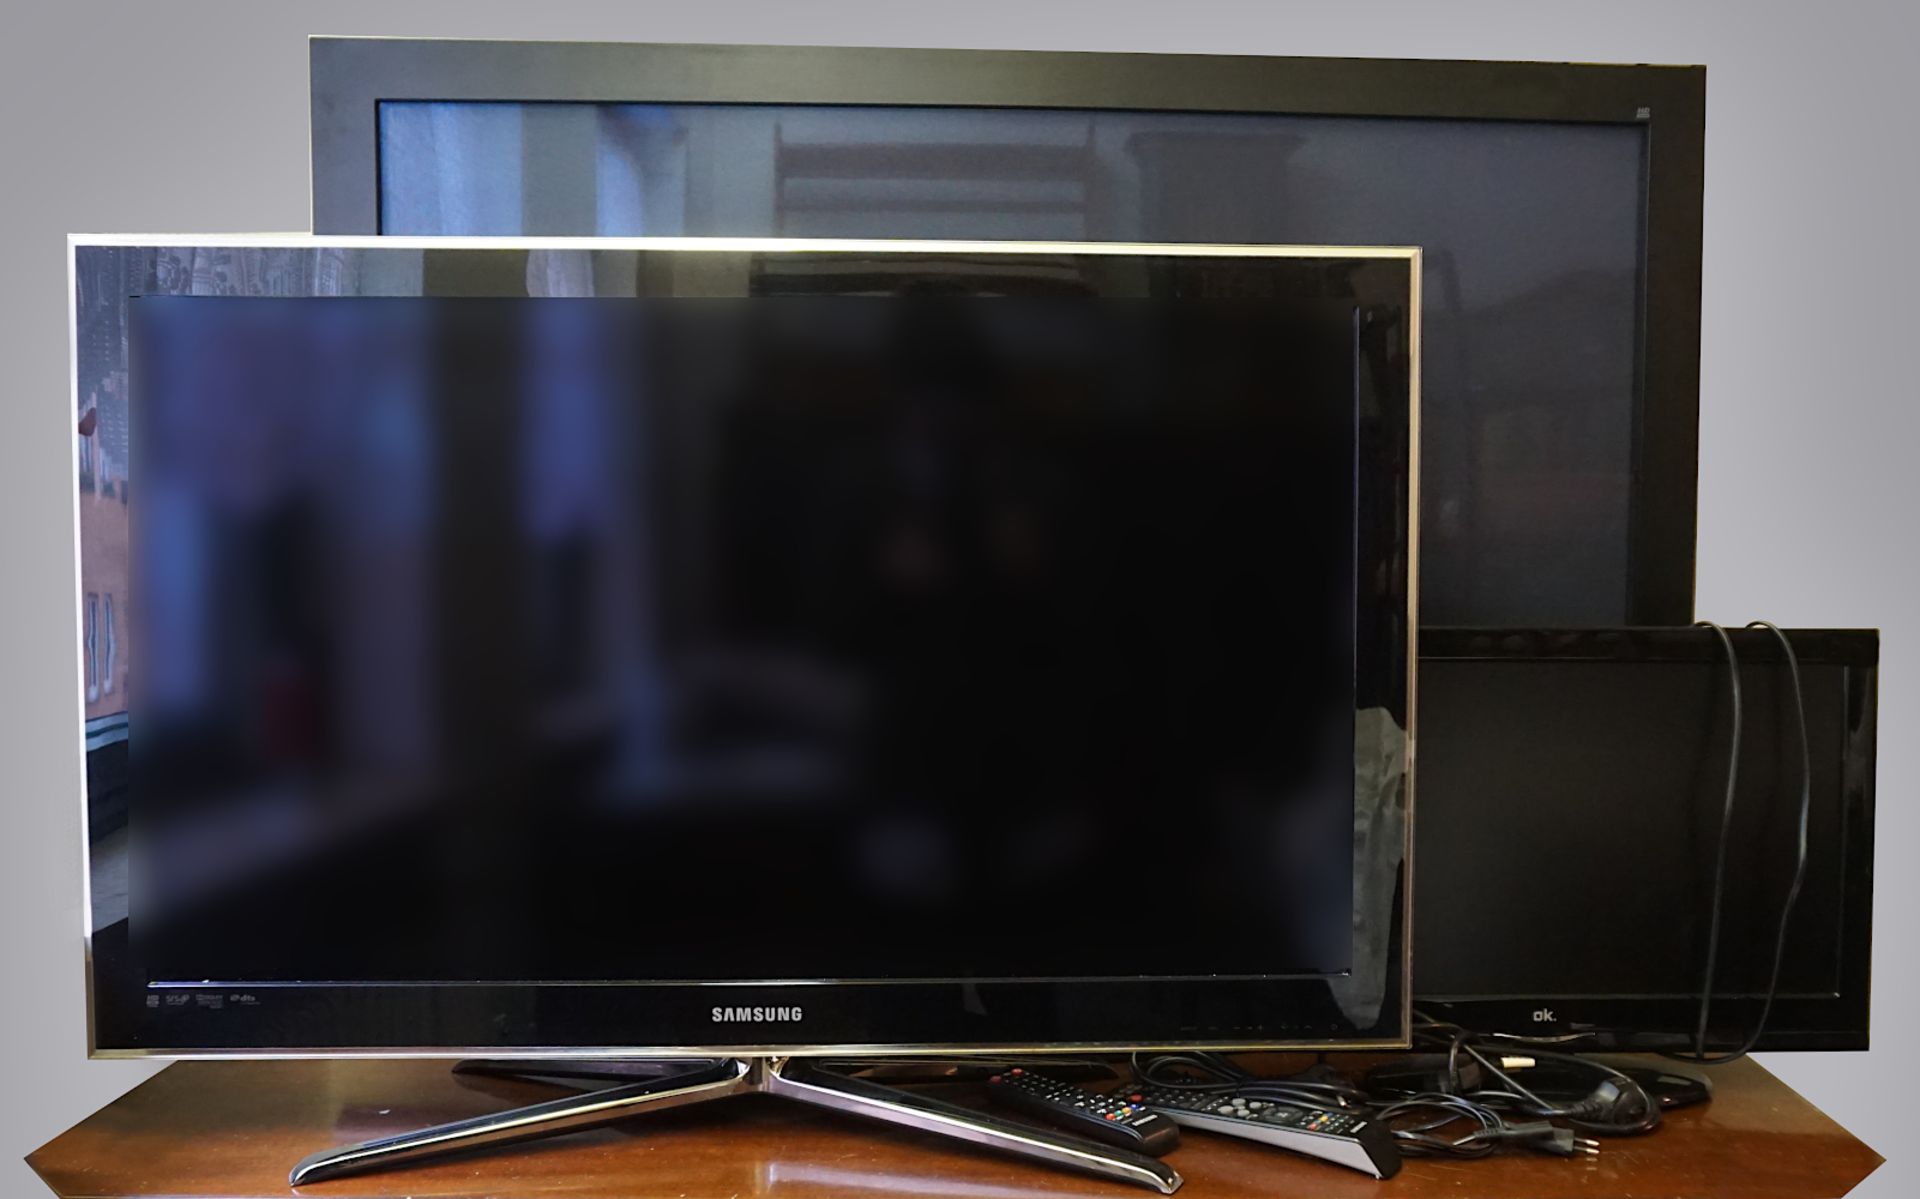 1 Plasma-Fernseher SAMSUNG "PS-50 C 7 H" ca. 50 Zoll sowie Flachbildschirmfernseher SA